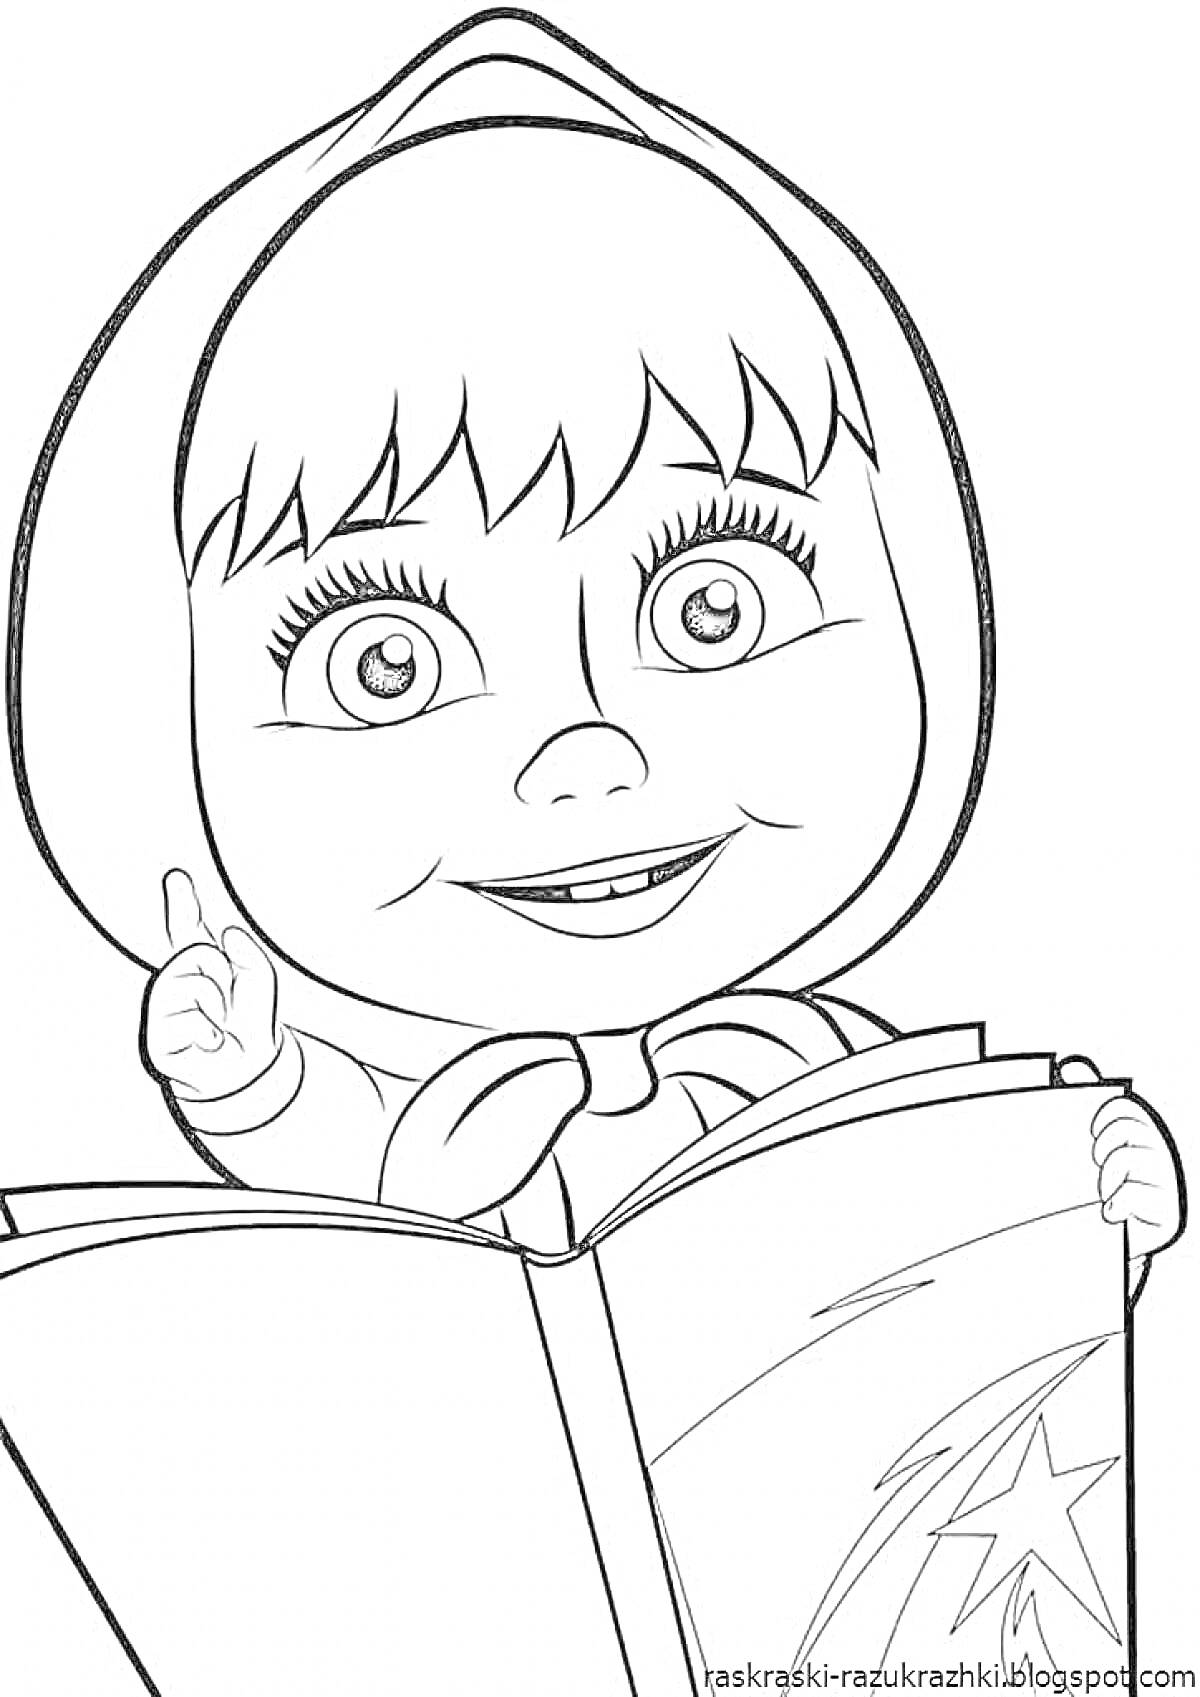 Девочка с большими глазами в косынке пальцем указывает в книгу с изображением звезды